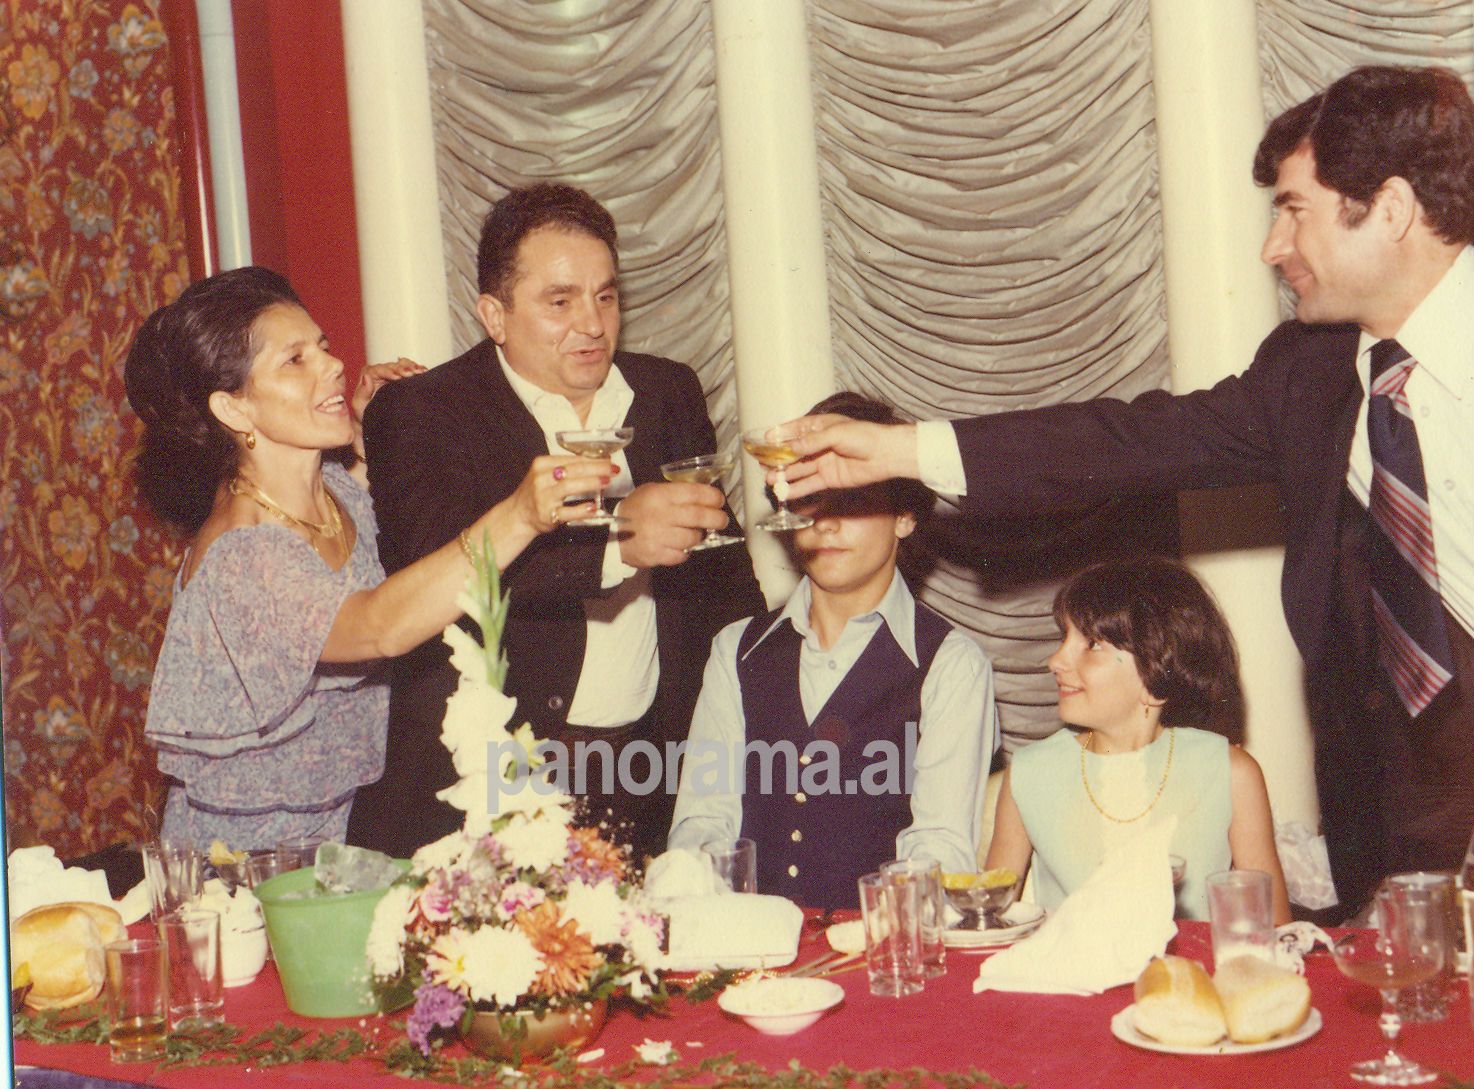 Familja e Jani Malos gjatë një feste familjare në SHBA